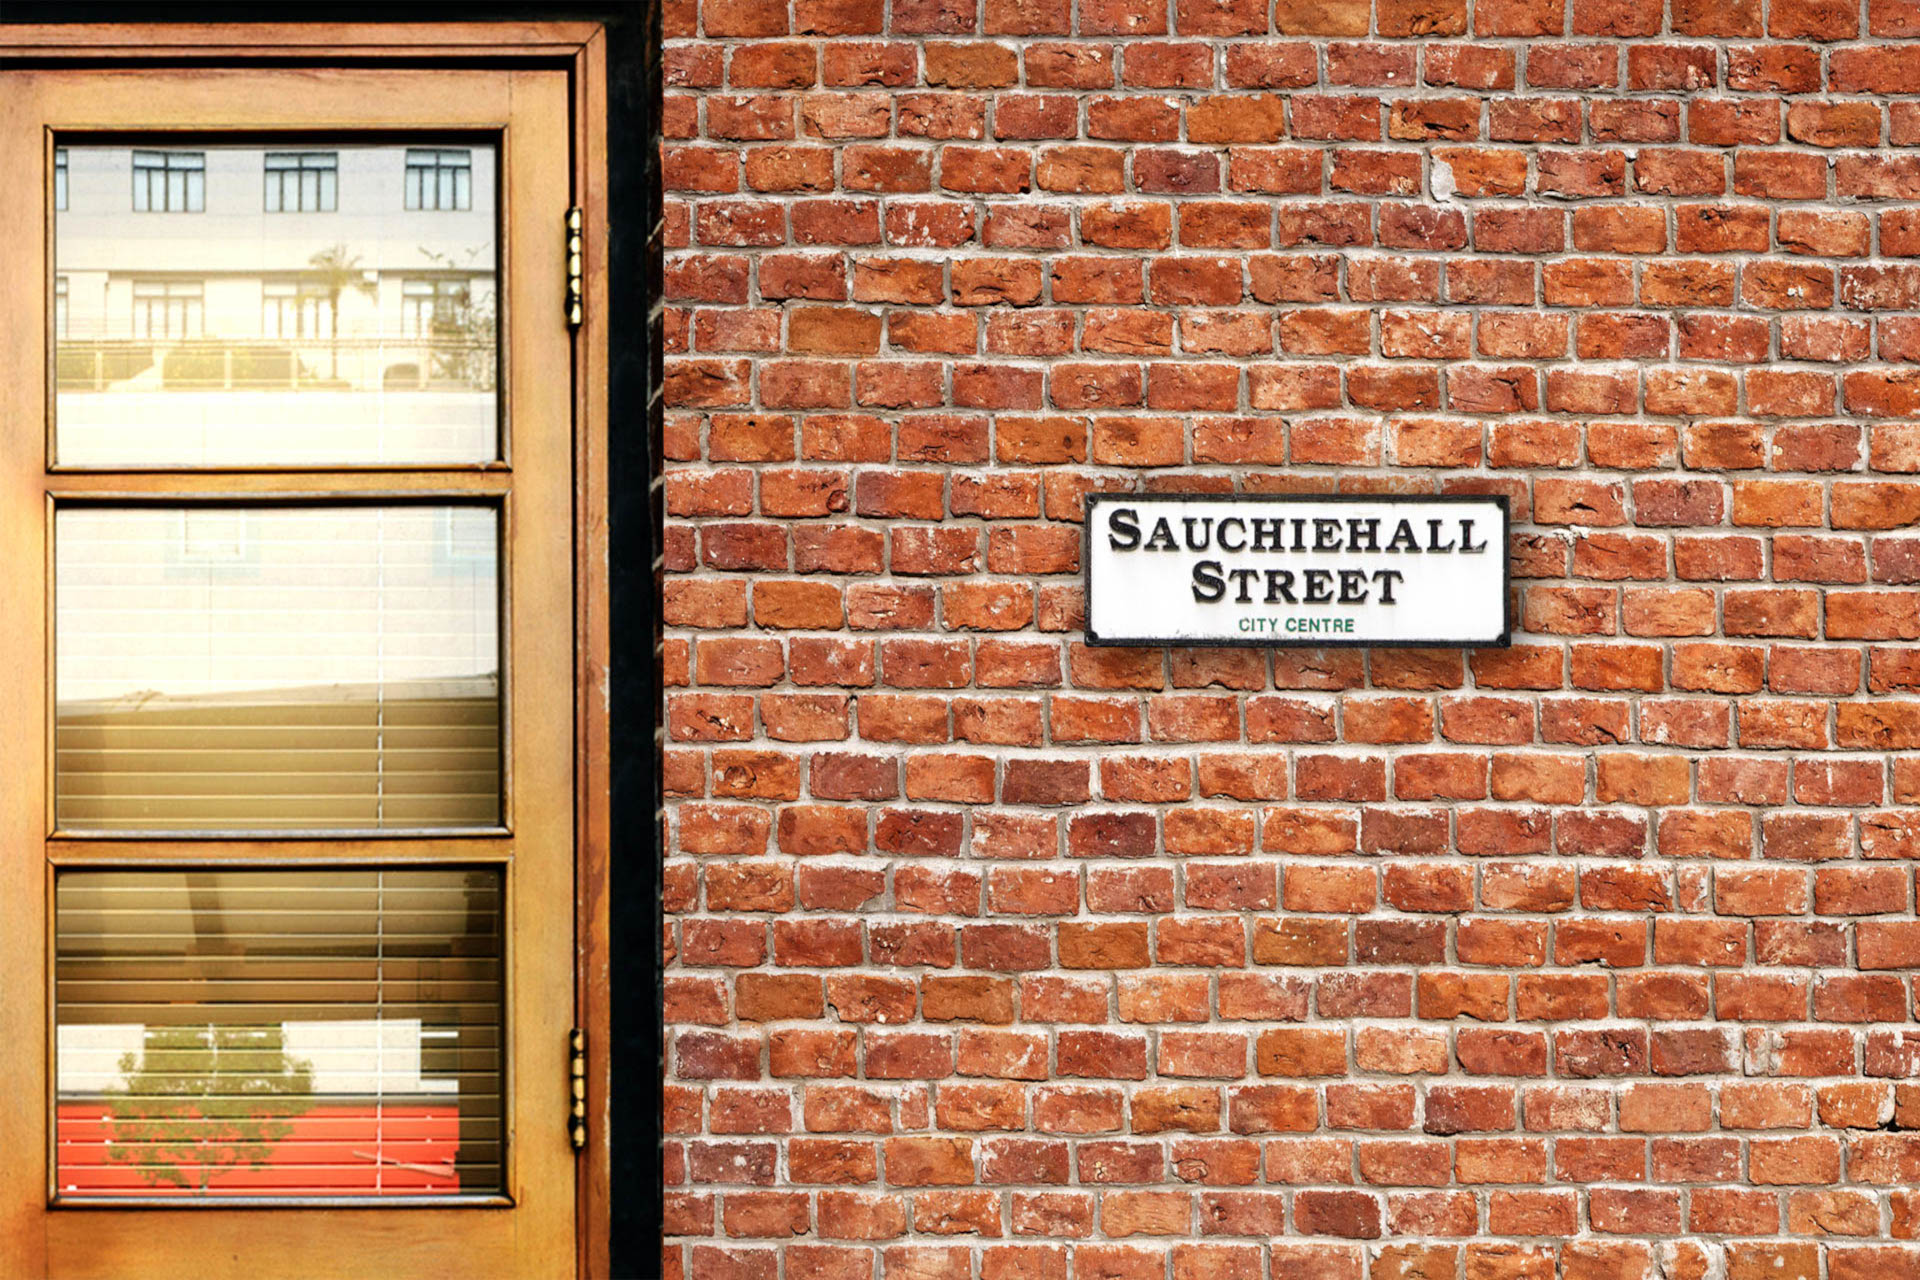 Sauchiehall-street-sign.-Een-van-de-meest-gezellige-straten-in-Glasgow-Scotland